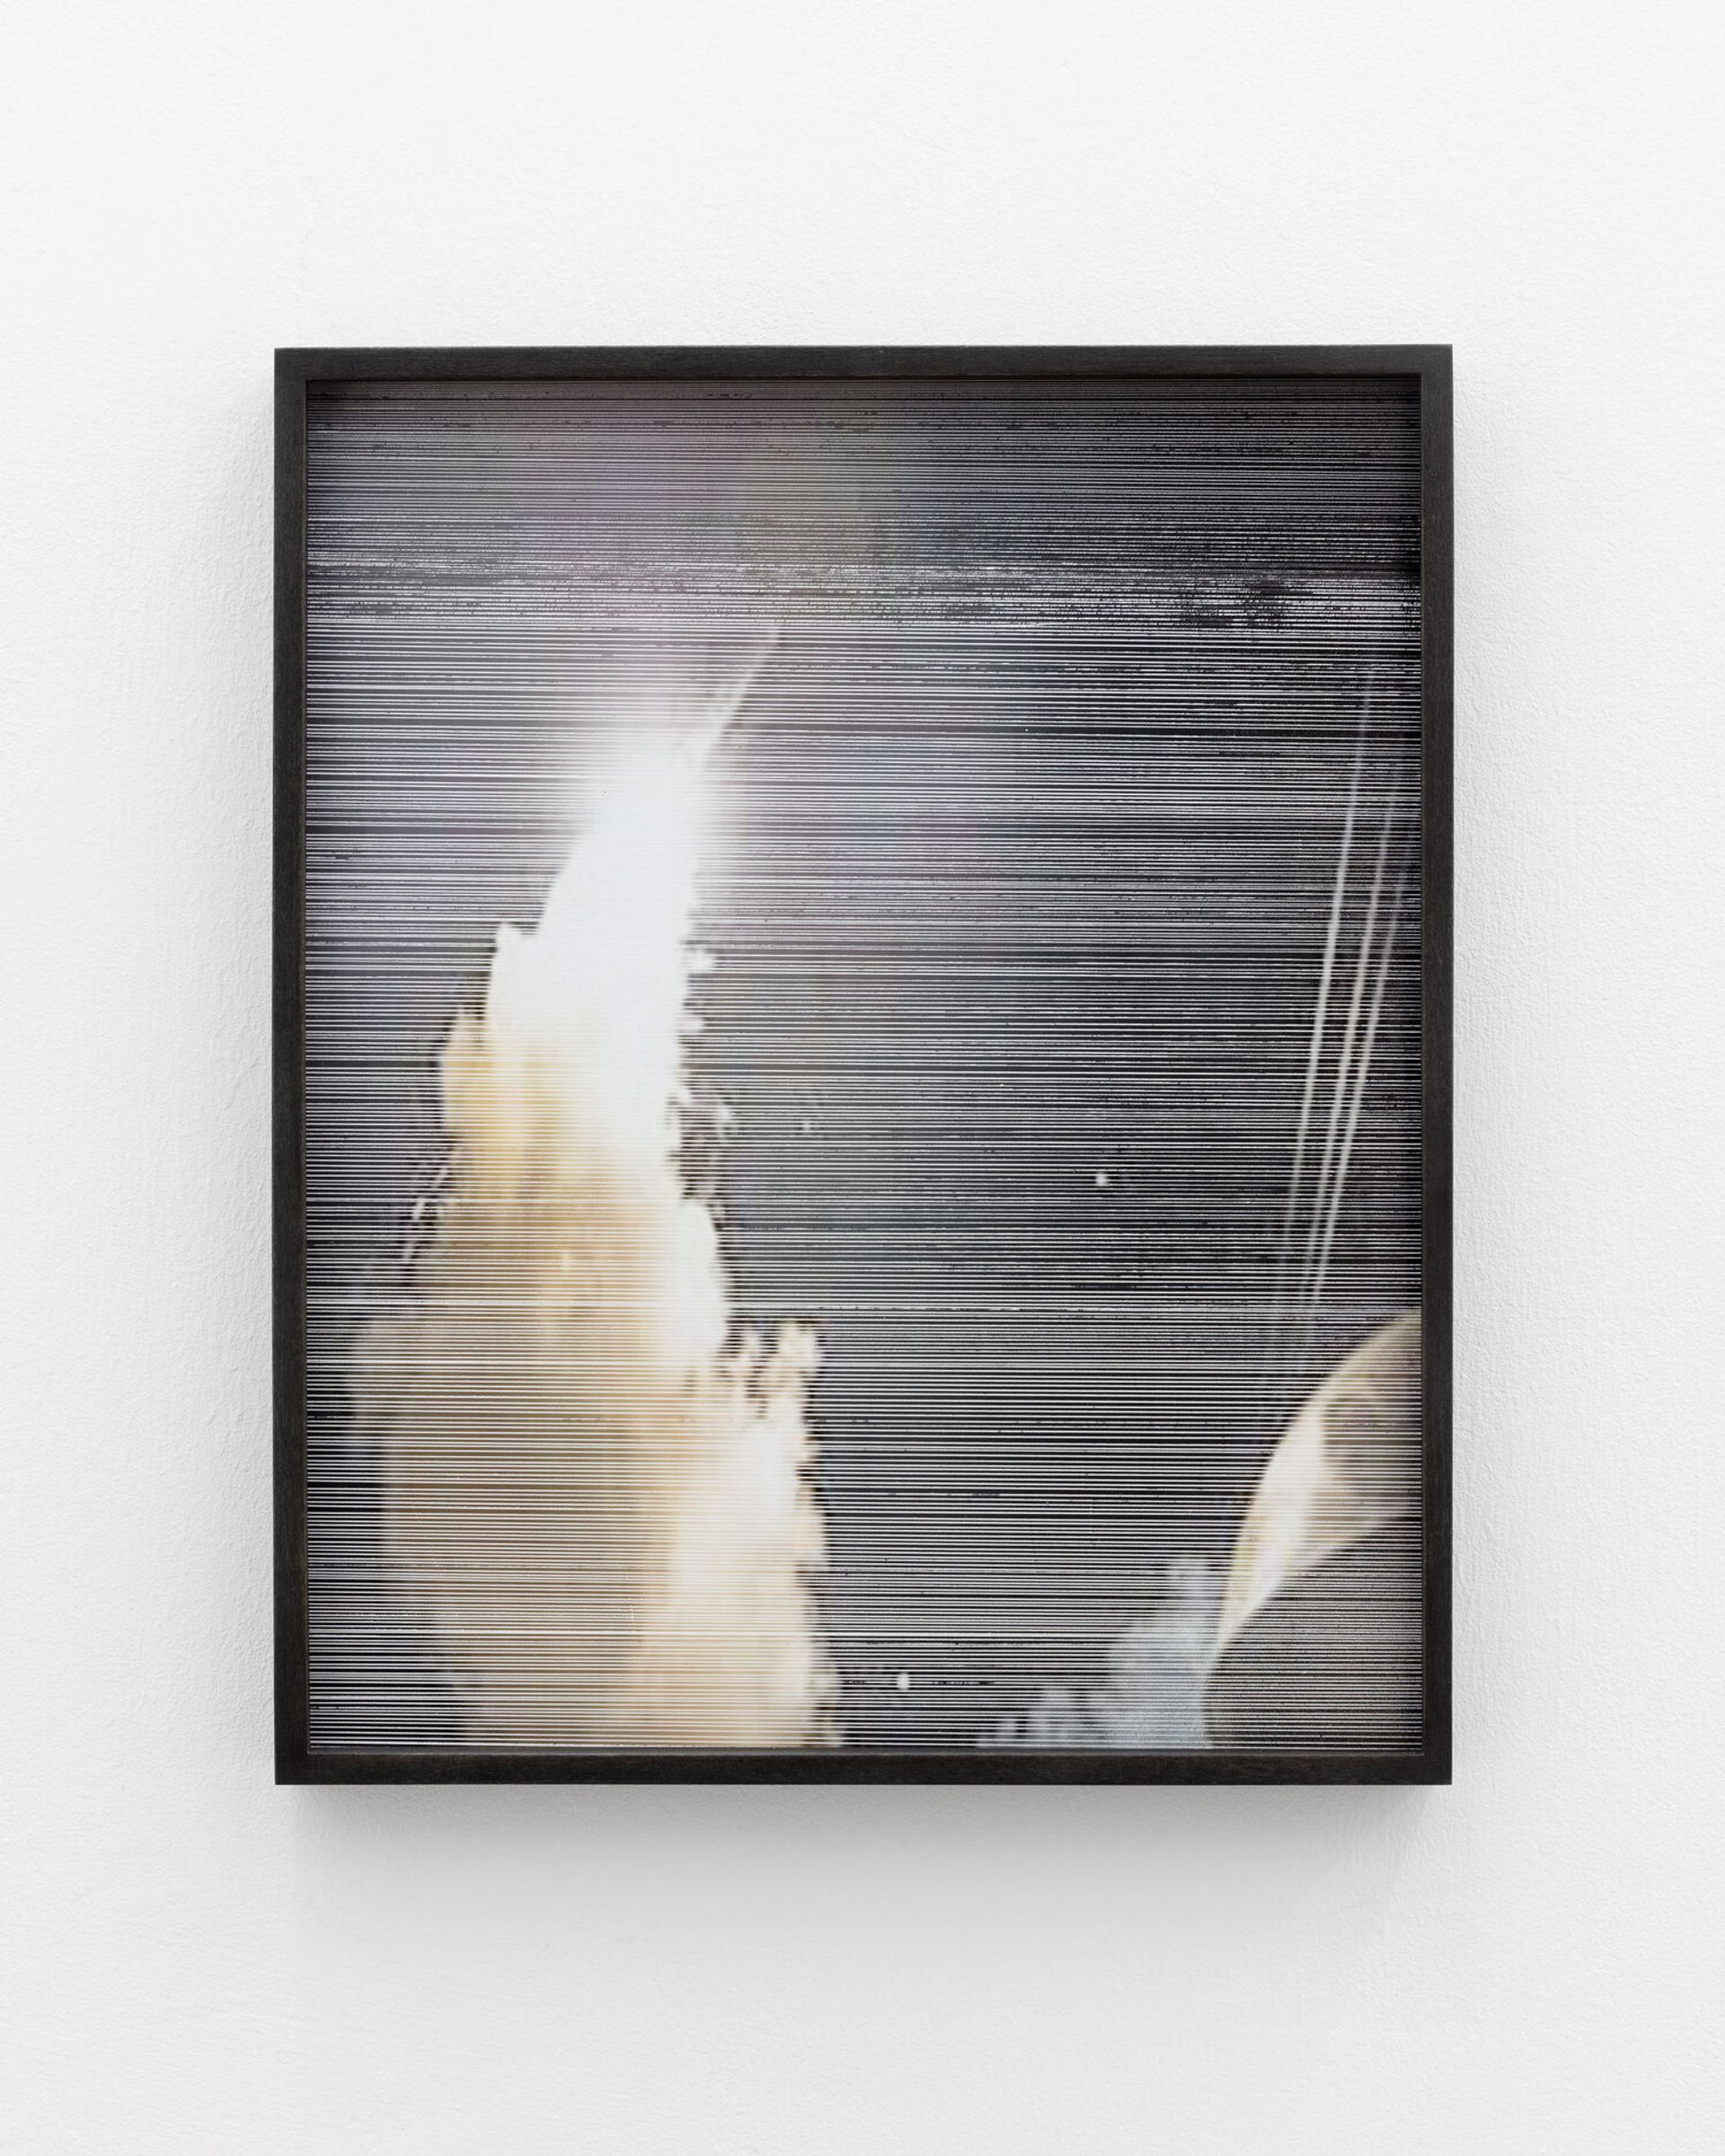 Anna Vogel, Rocket, 2019 
pigment print, varnish, scratched, framed in lime, anthracite, artglass
37 × 30 cm
3 variations 

Photo: Sebastian Kissel